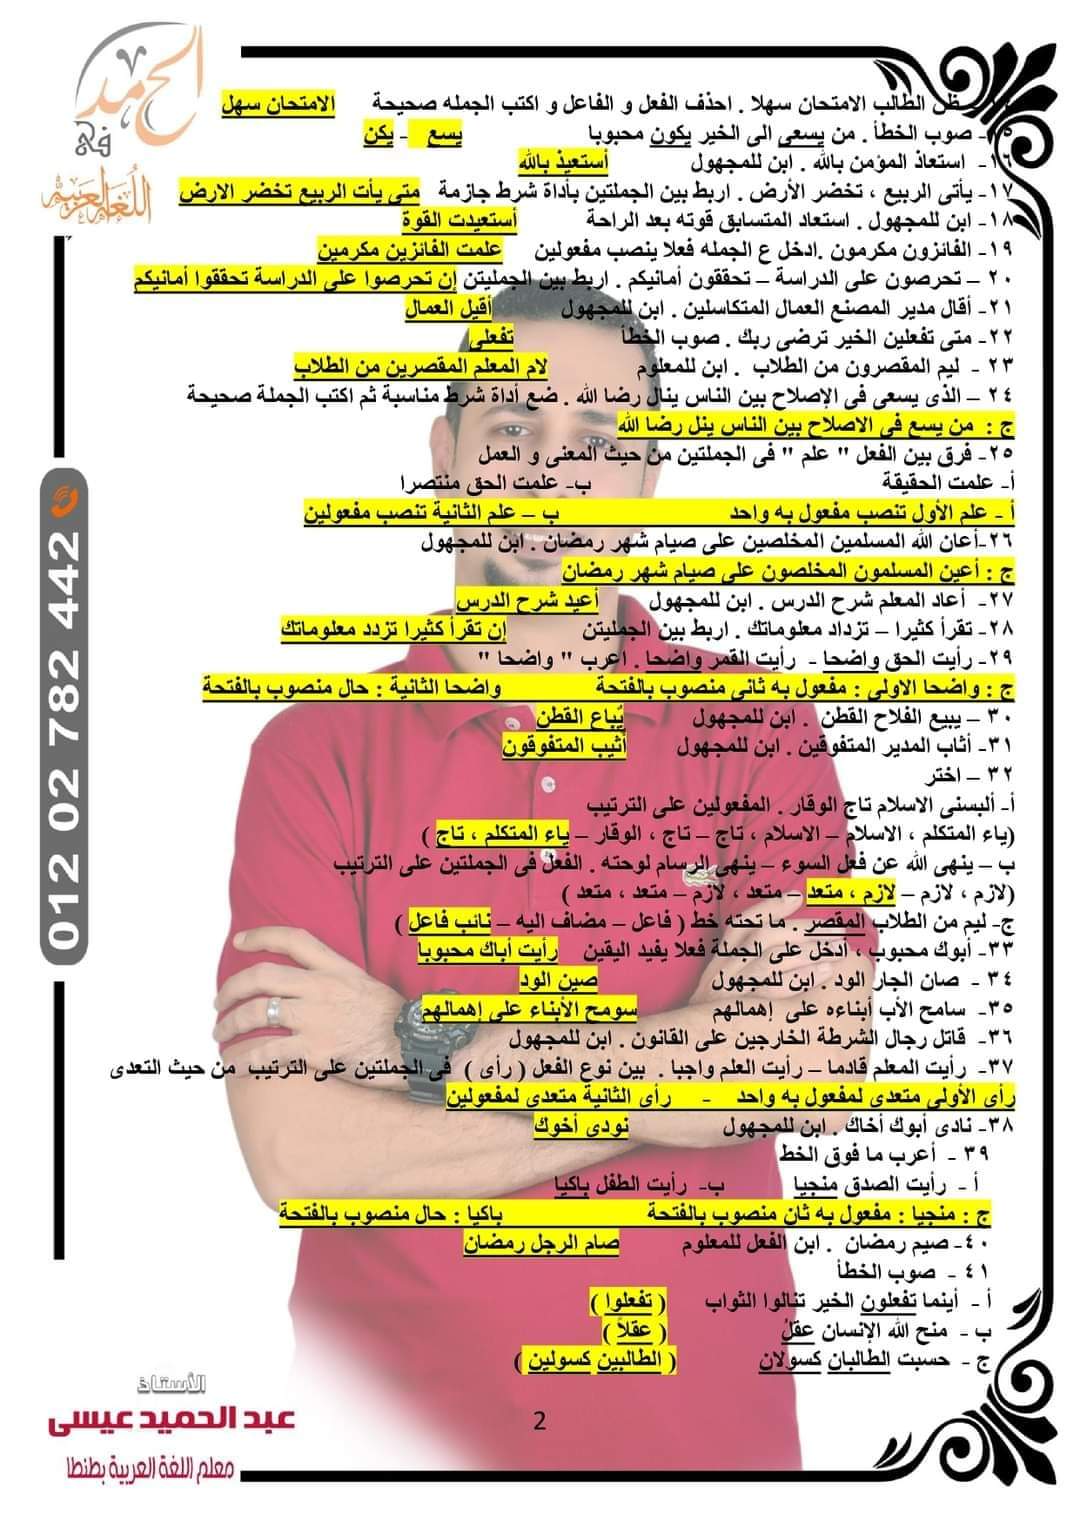 توقعات امتحان اللغة العربية الصف الأول الاعدادي الترم الثاني كل المحافظات لمستر عبد الحميد عيسى